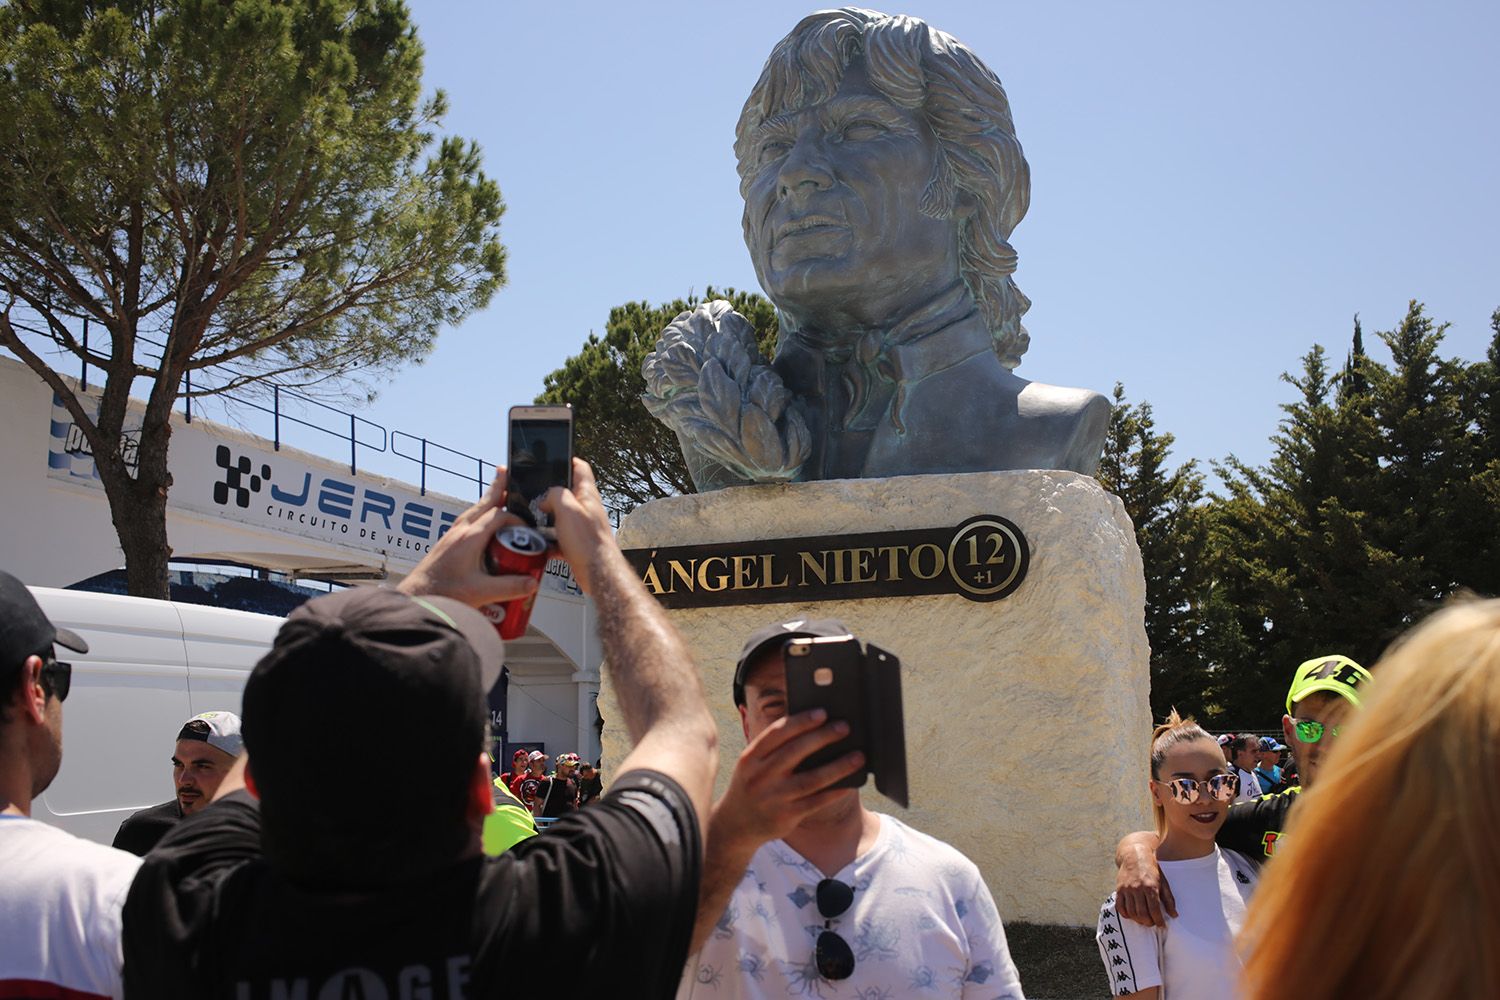 Aficionados hacen cola para echarse fotos con el busto de Ángel Nieto. FOTO: JUAN CARLOS TORO.